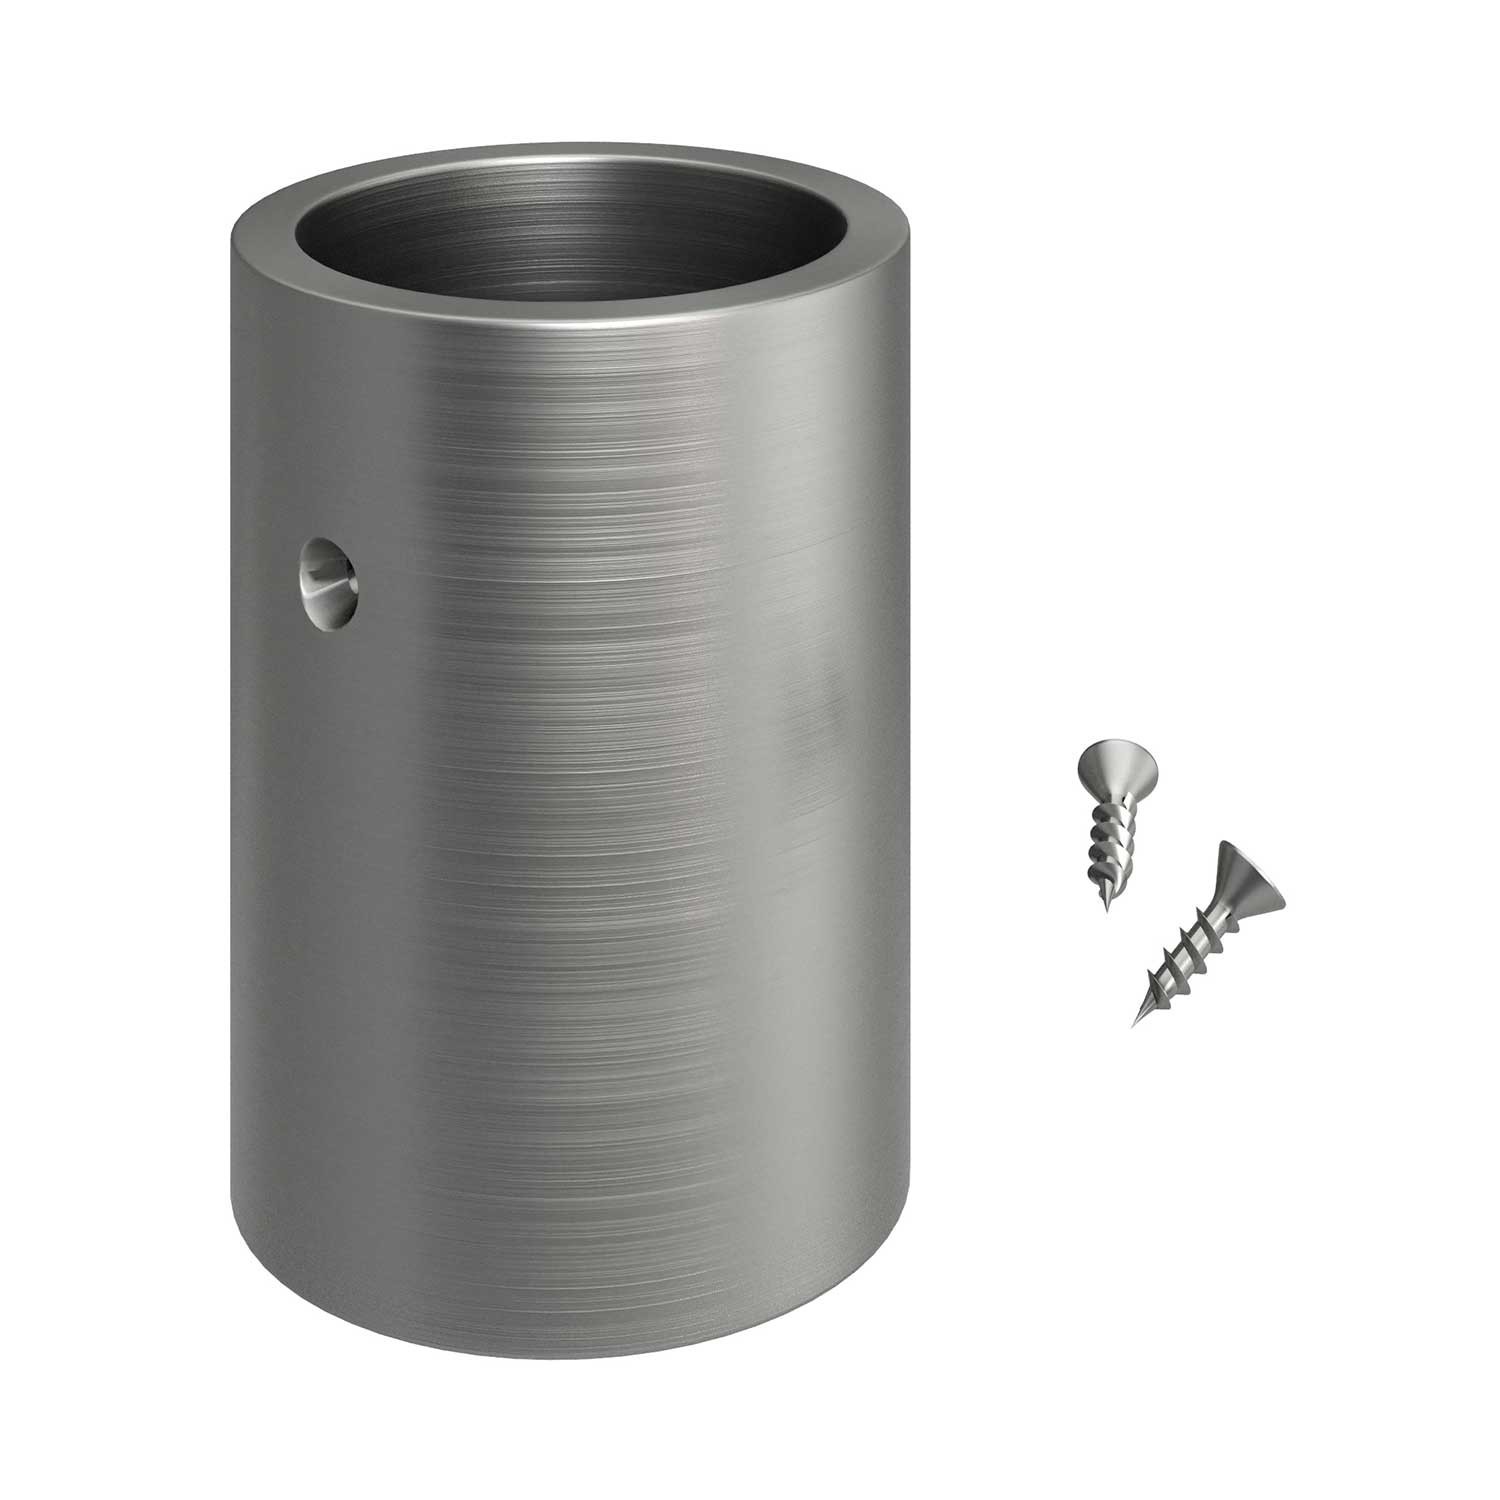 Verzinkte metalen aansluitdop voor 20 mm. Creative-Tube, inclusief accessoires